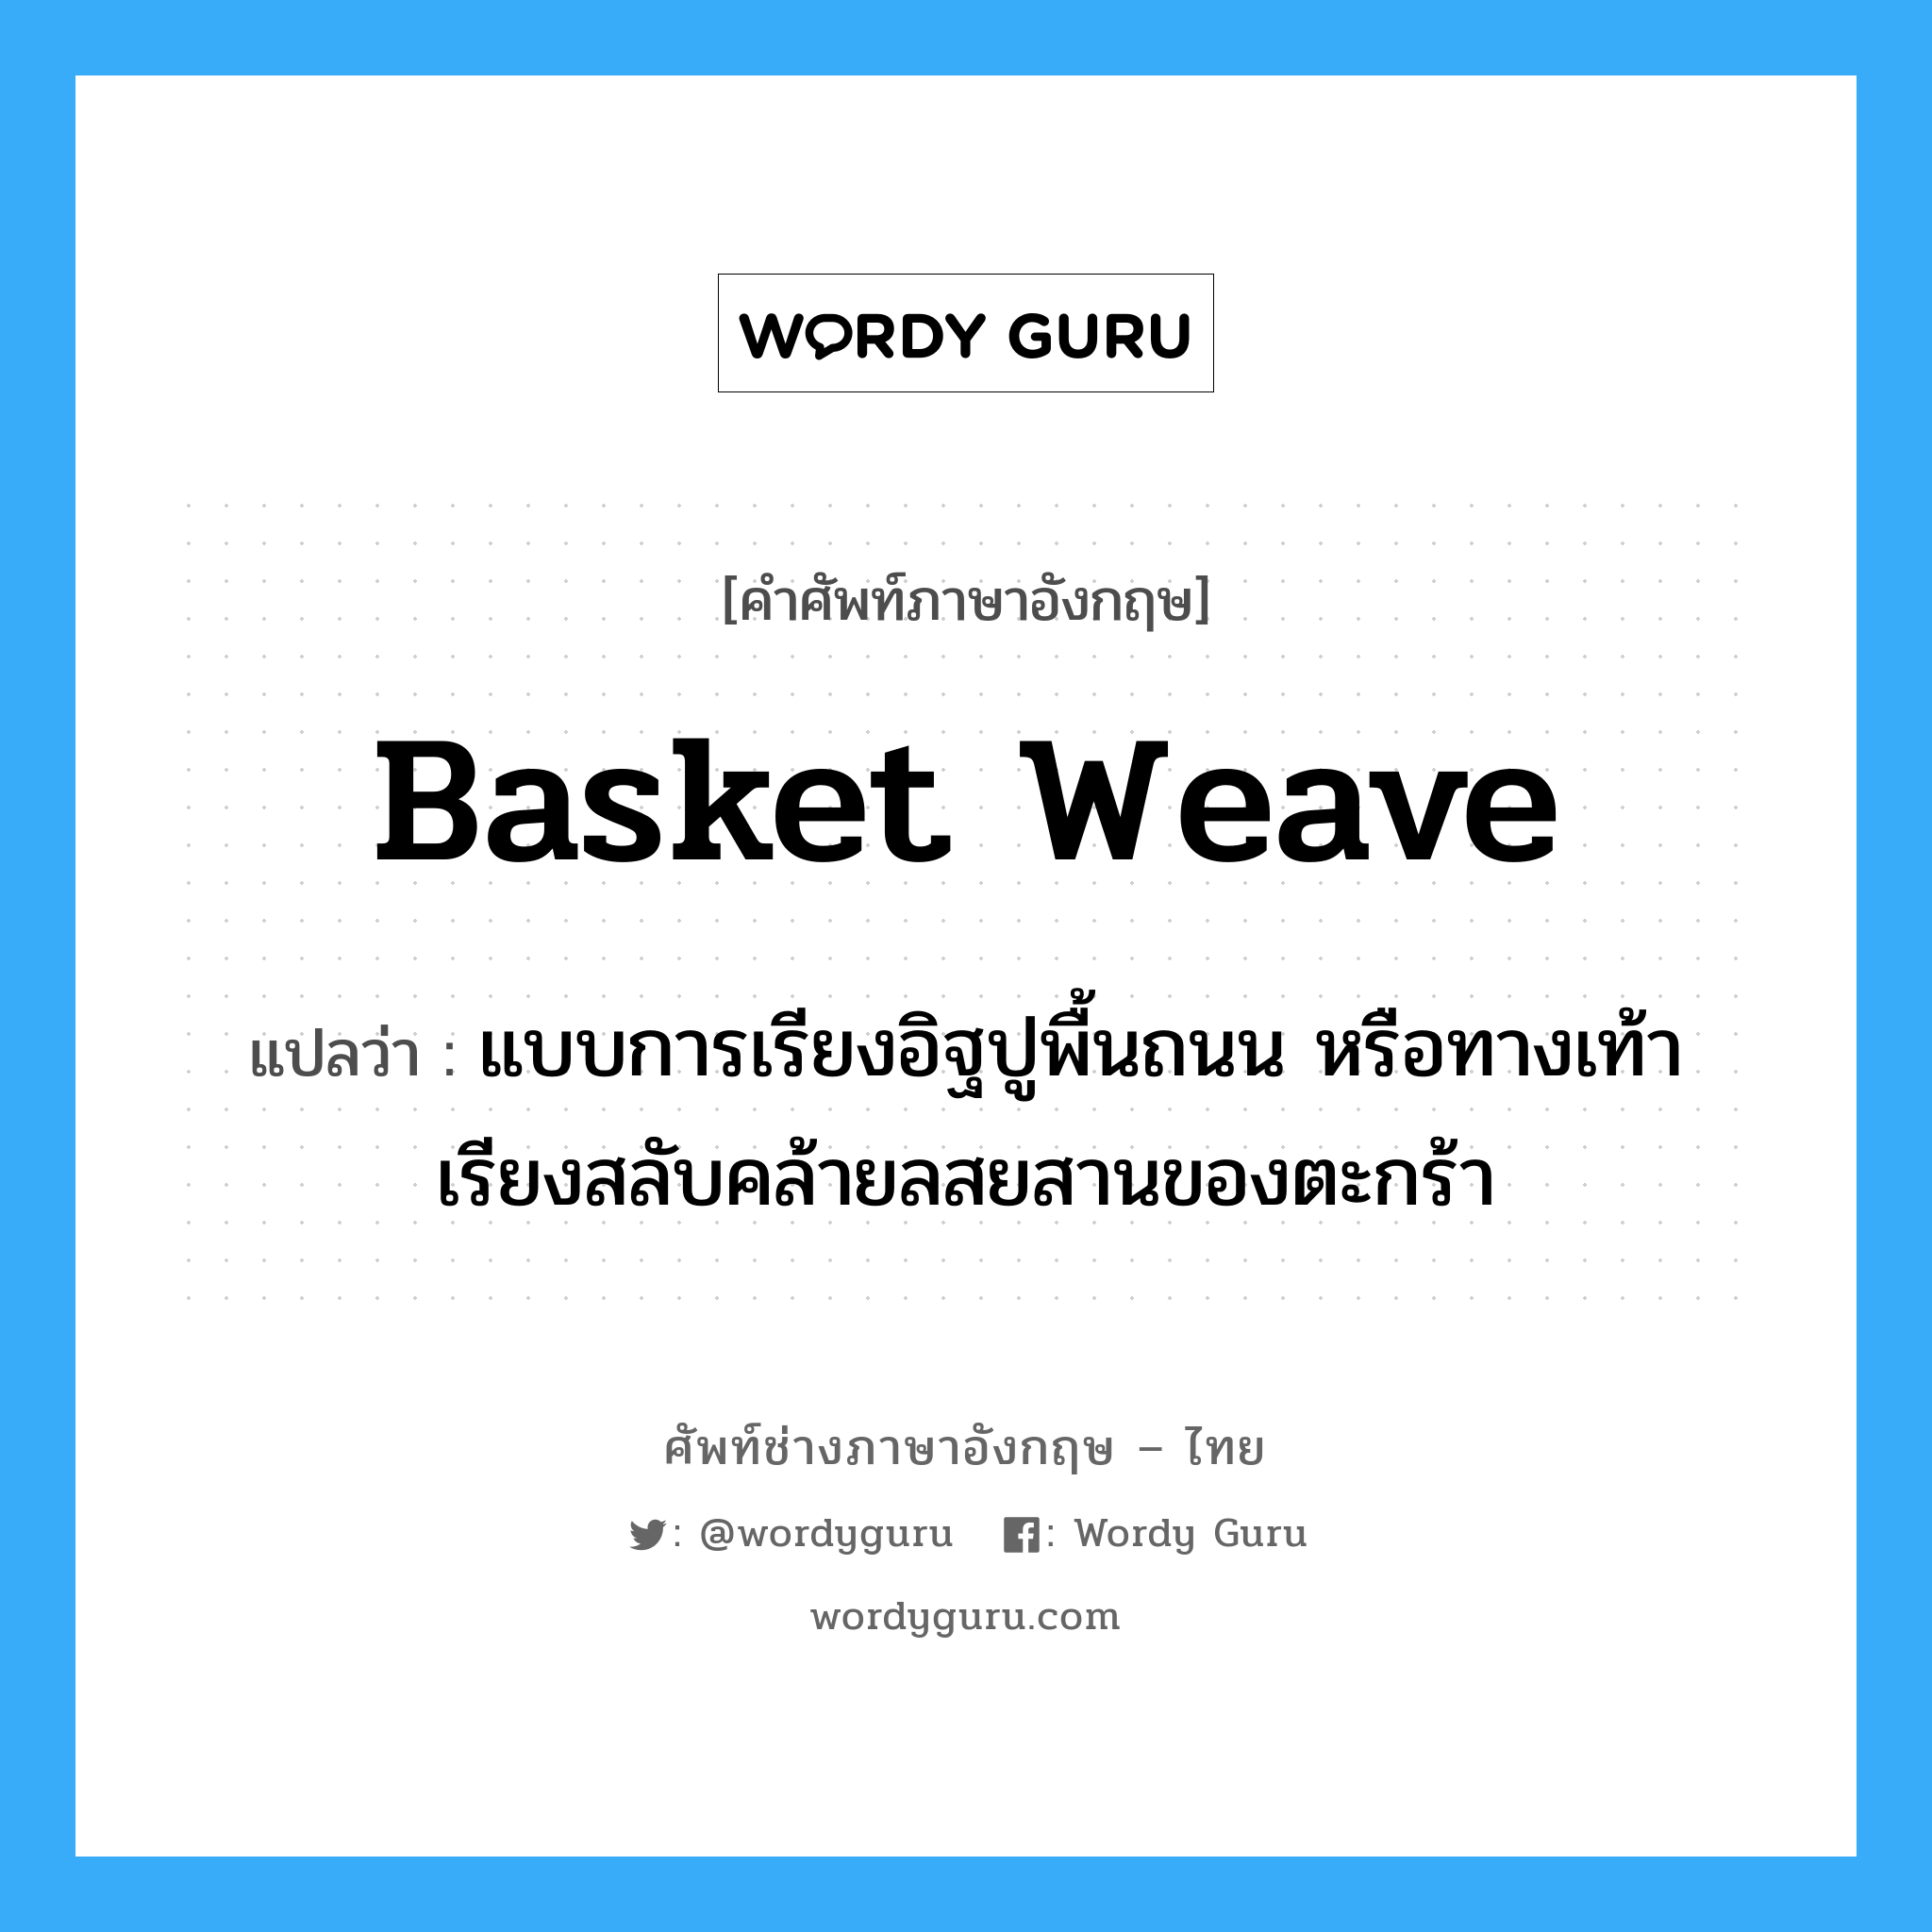 basket weave แปลว่า?, คำศัพท์ช่างภาษาอังกฤษ - ไทย basket weave คำศัพท์ภาษาอังกฤษ basket weave แปลว่า แบบการเรียงอิฐปูพื้นถนน หรือทางเท้า เรียงสลับคล้ายลสยสานของตะกร้า